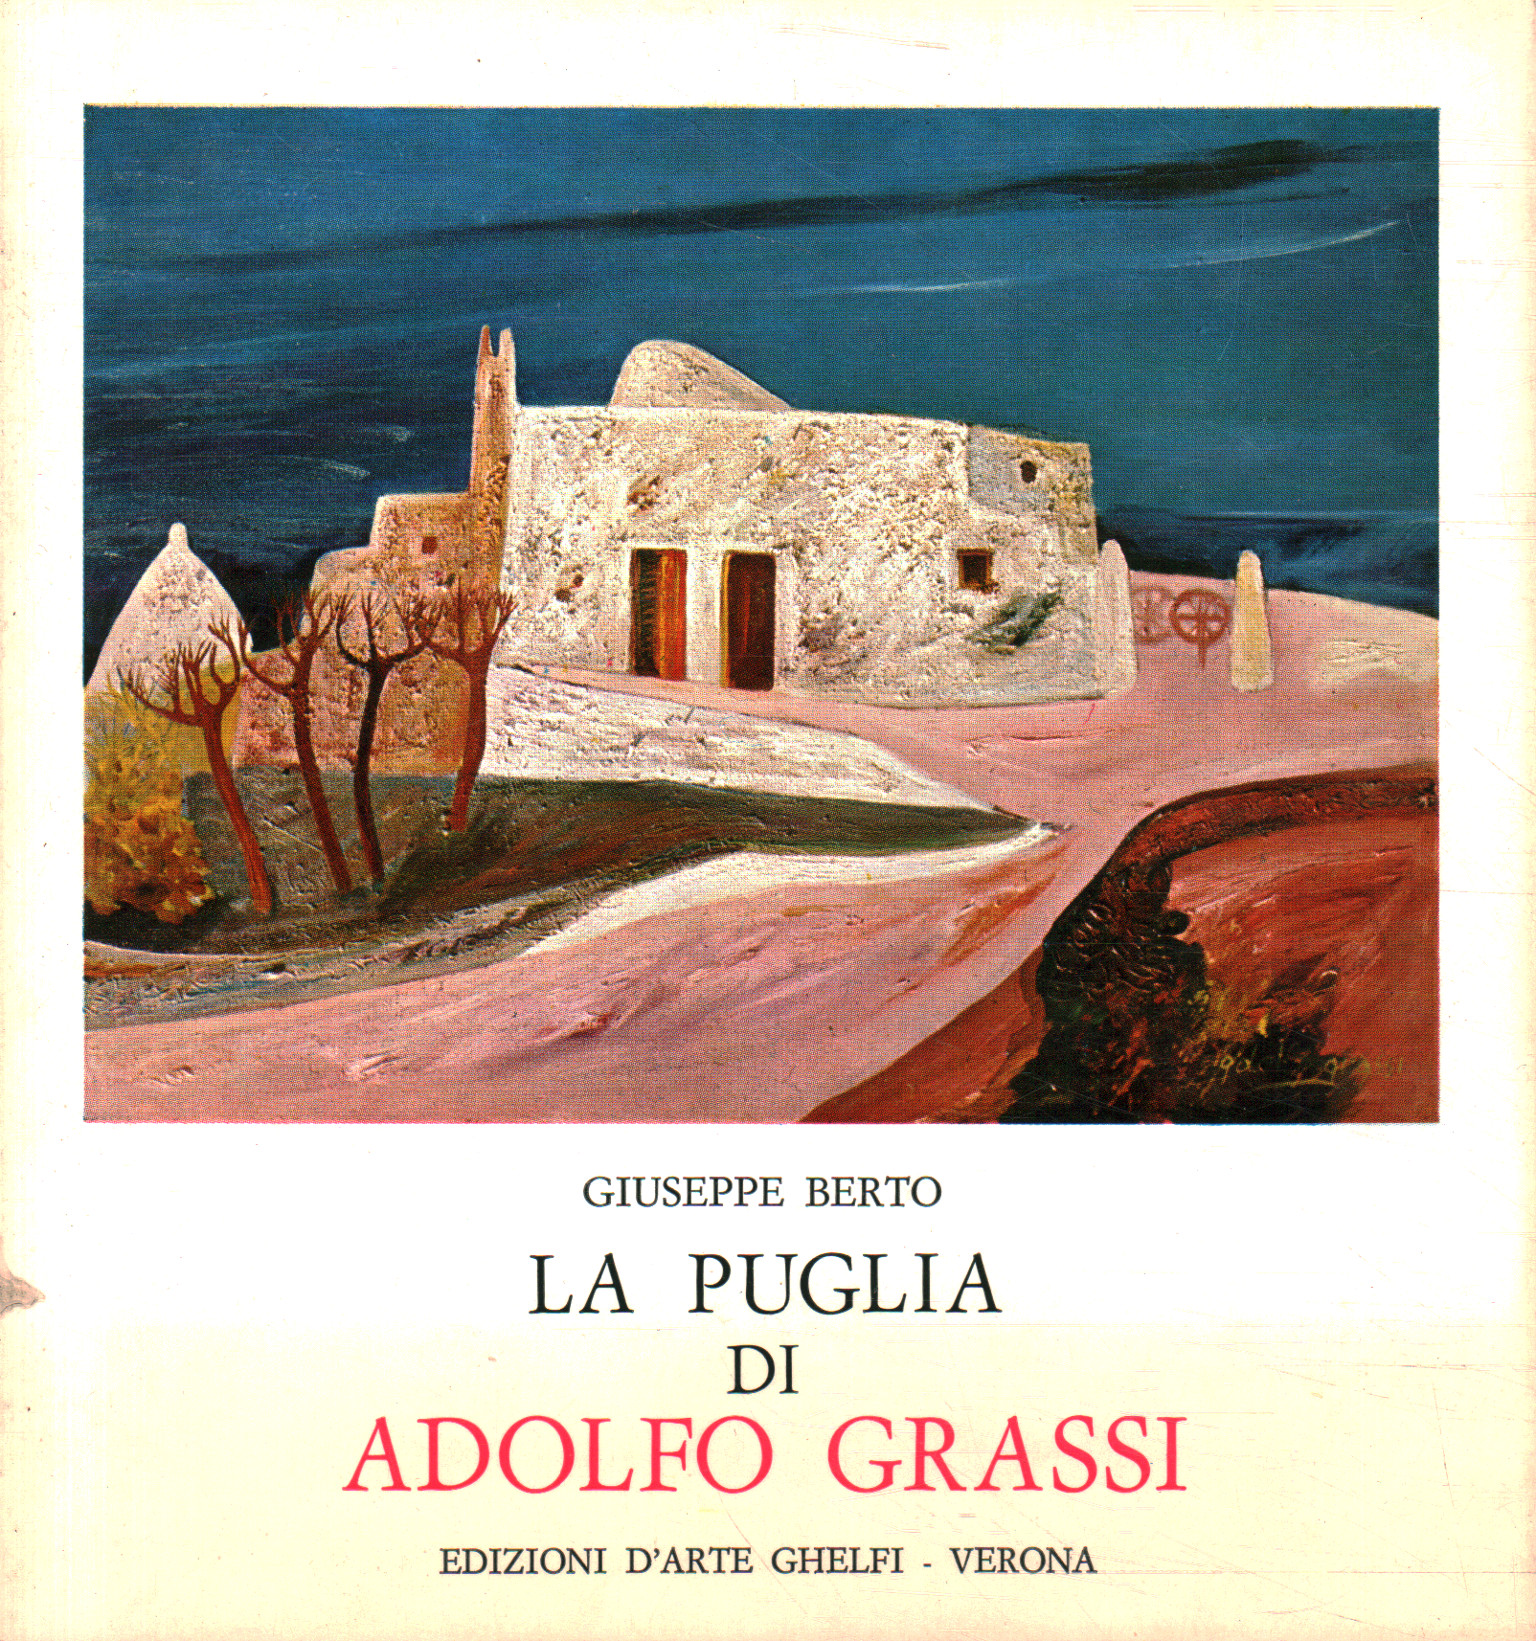 Puglia by Adolfo Grassi